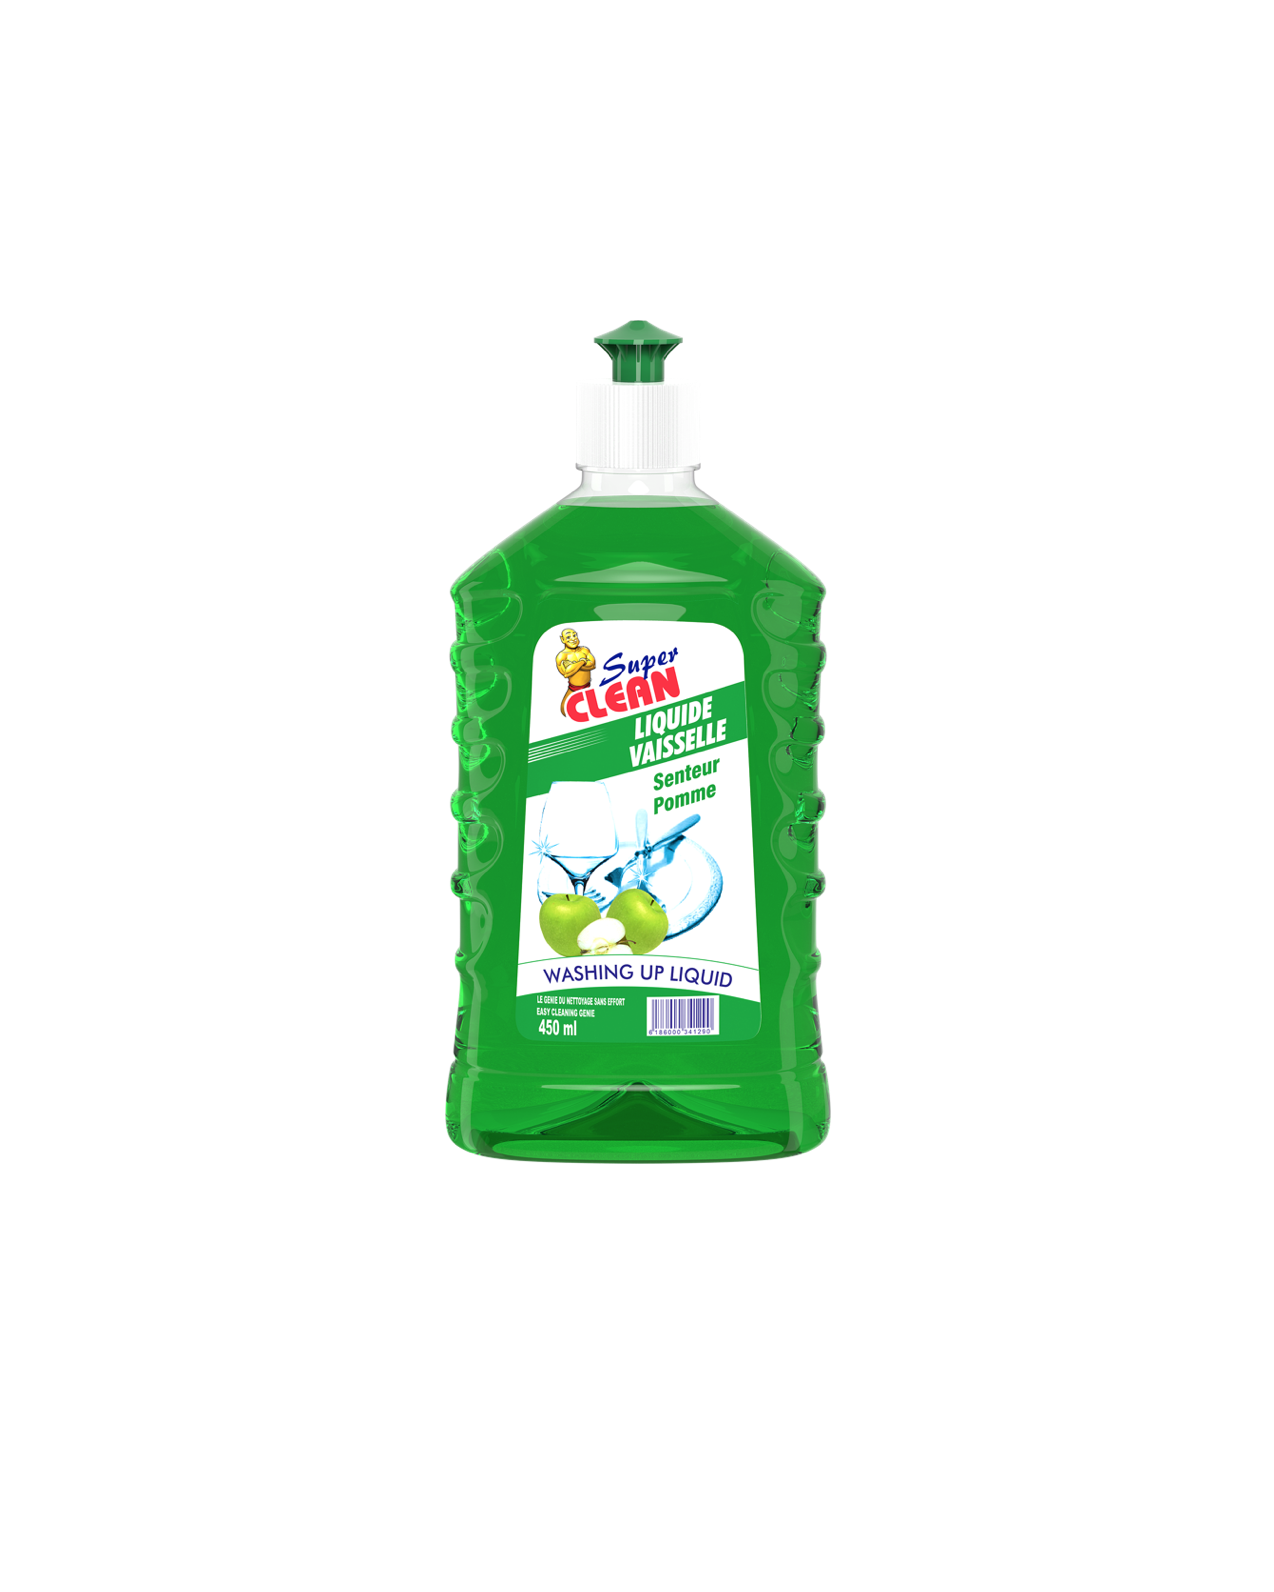 SUPER CLEAN_Liquide Vaisselle Pomme 450ml_Siprochim